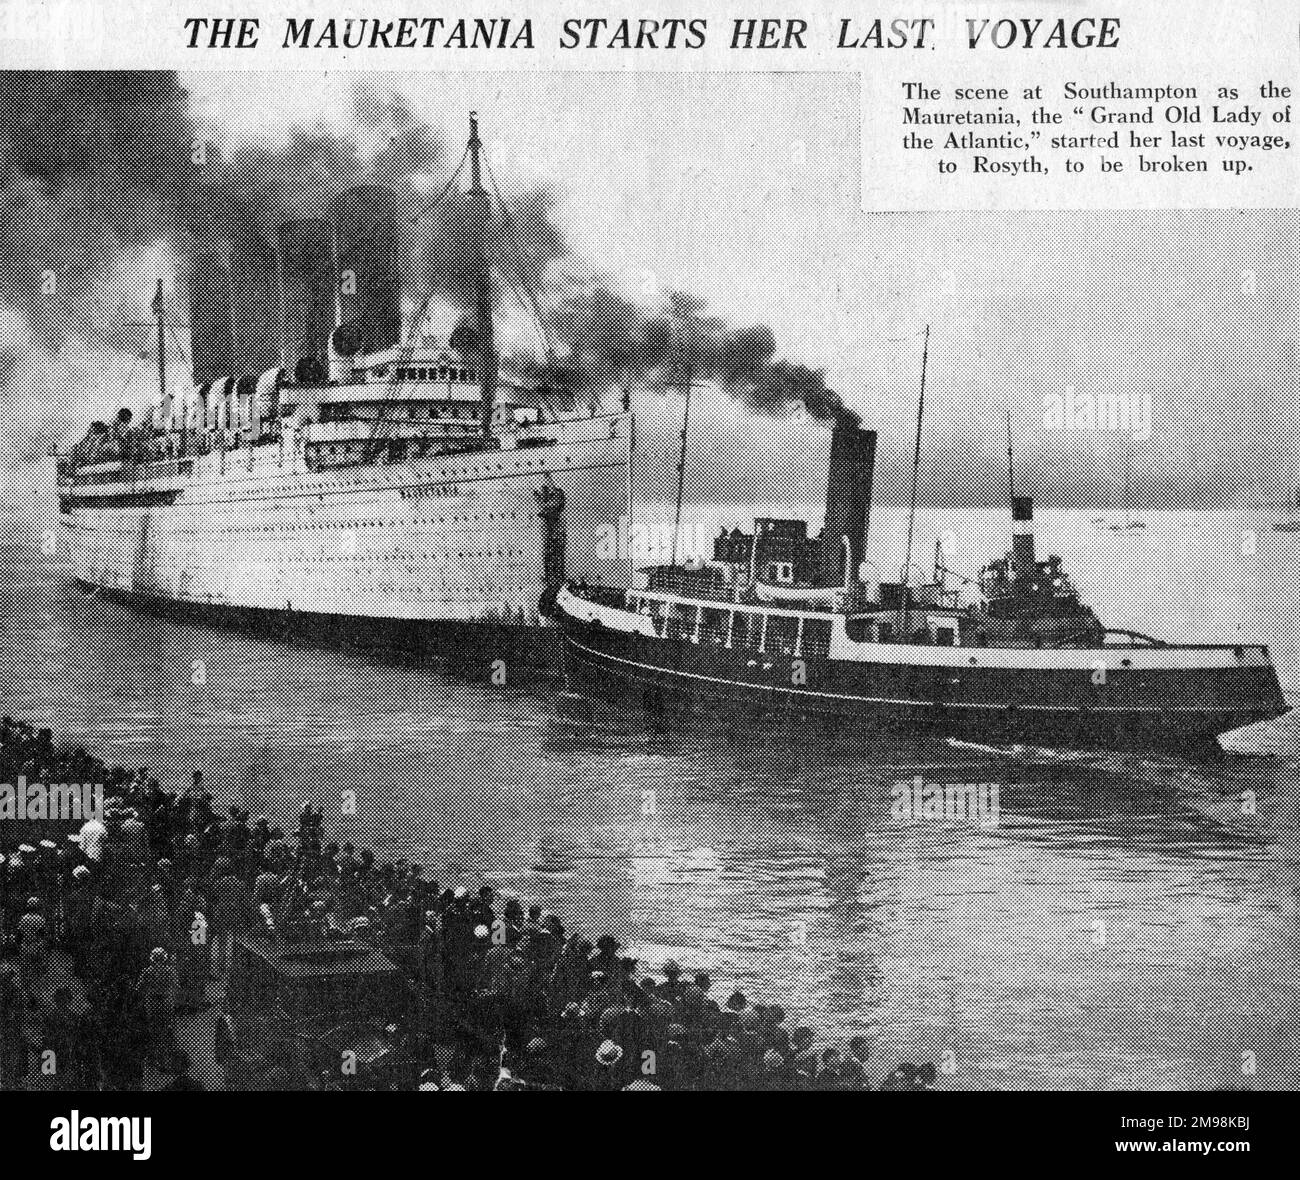 RMS Mauretania, Cunard Ocean Liner, lasciando Southampton per l'ultima volta, dirigendosi verso Rosyth, Scozia, dove doveva essere rotta. Foto Stock